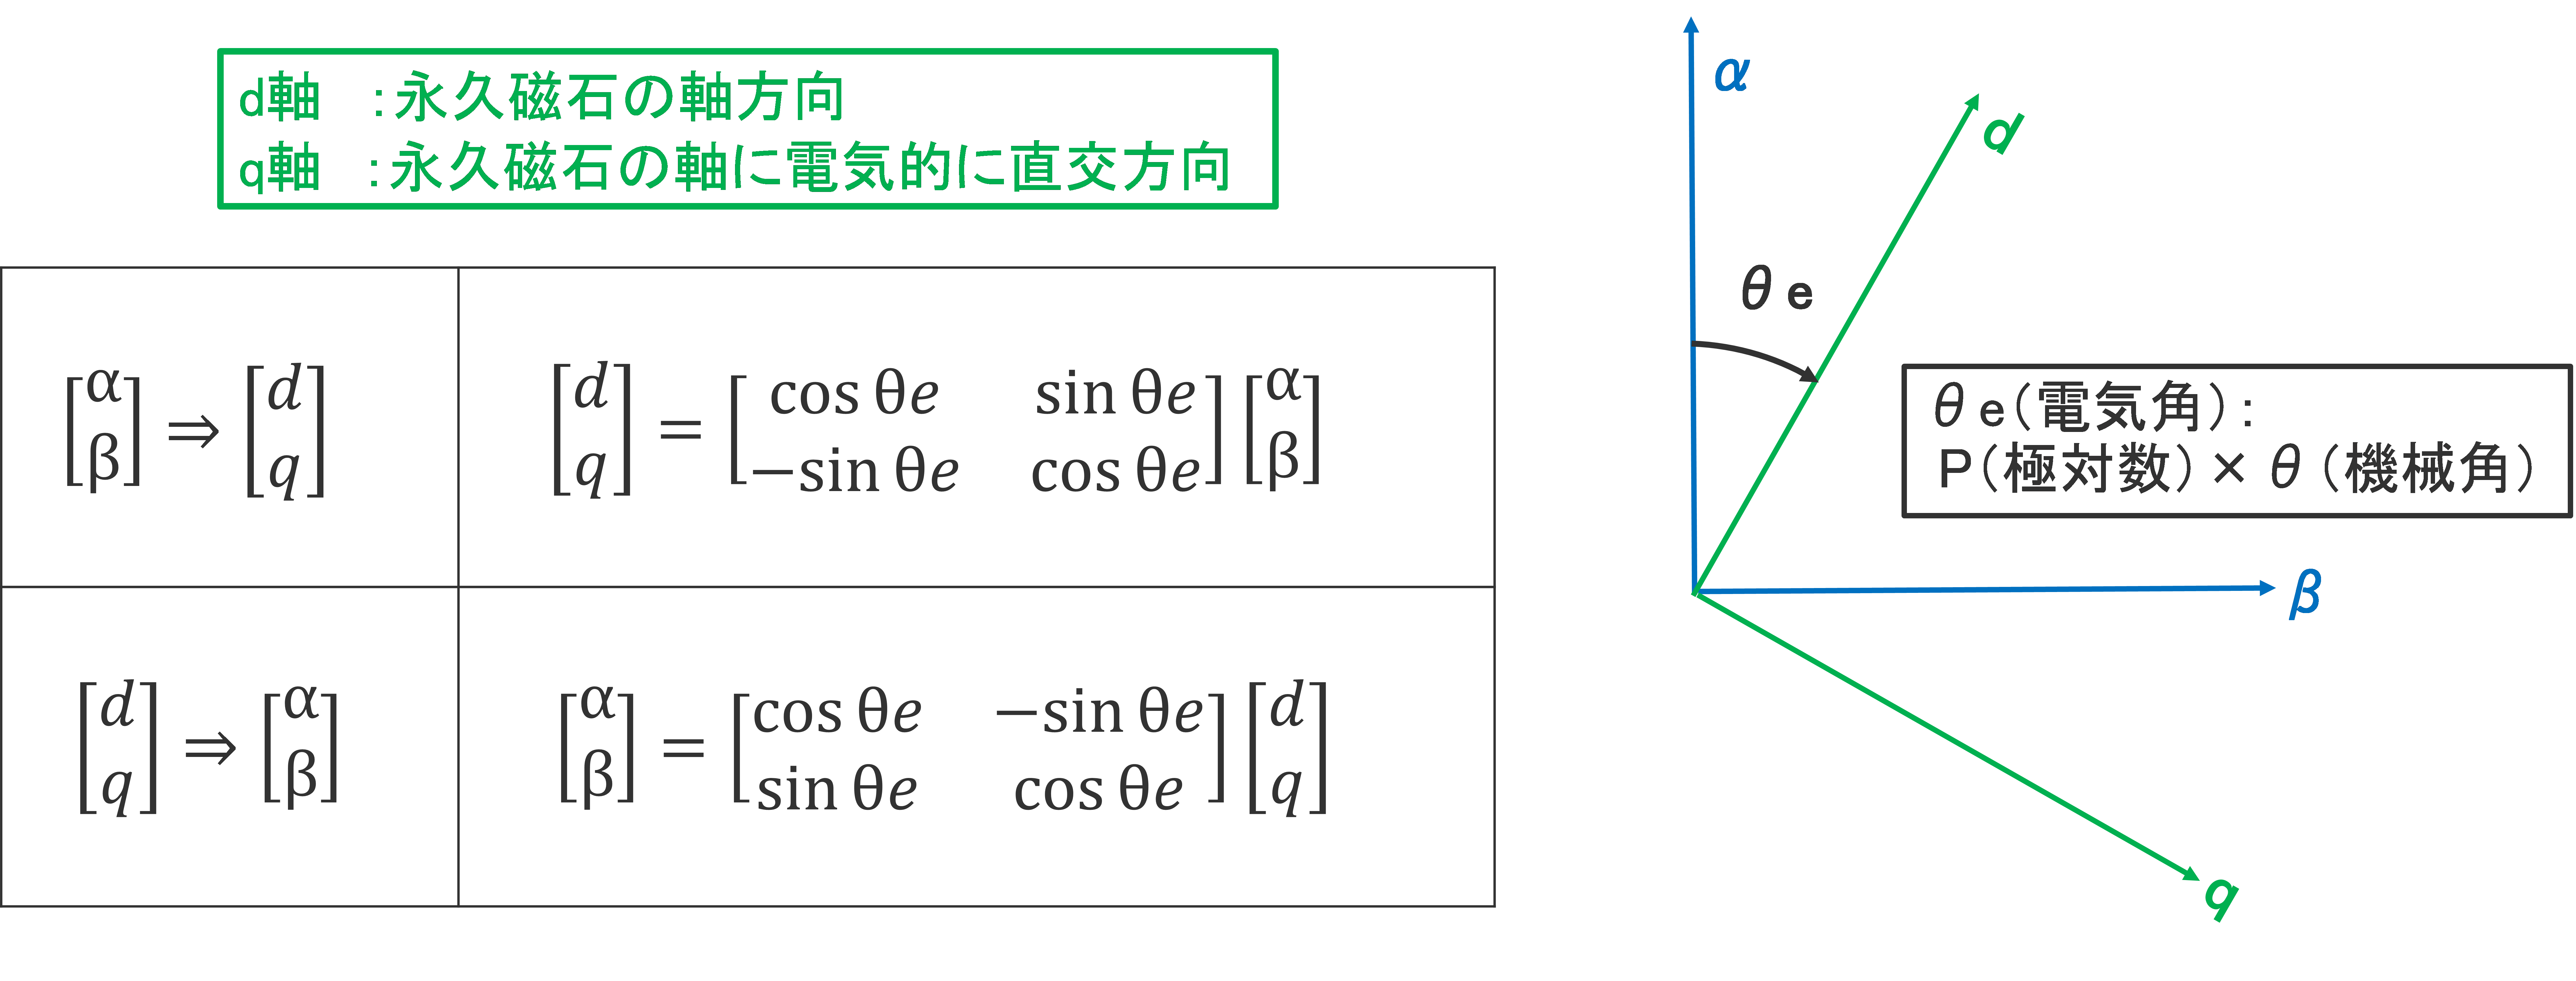 2相交流（静止座標系）[α β]⇔2軸直流（回転座標系）[d q]